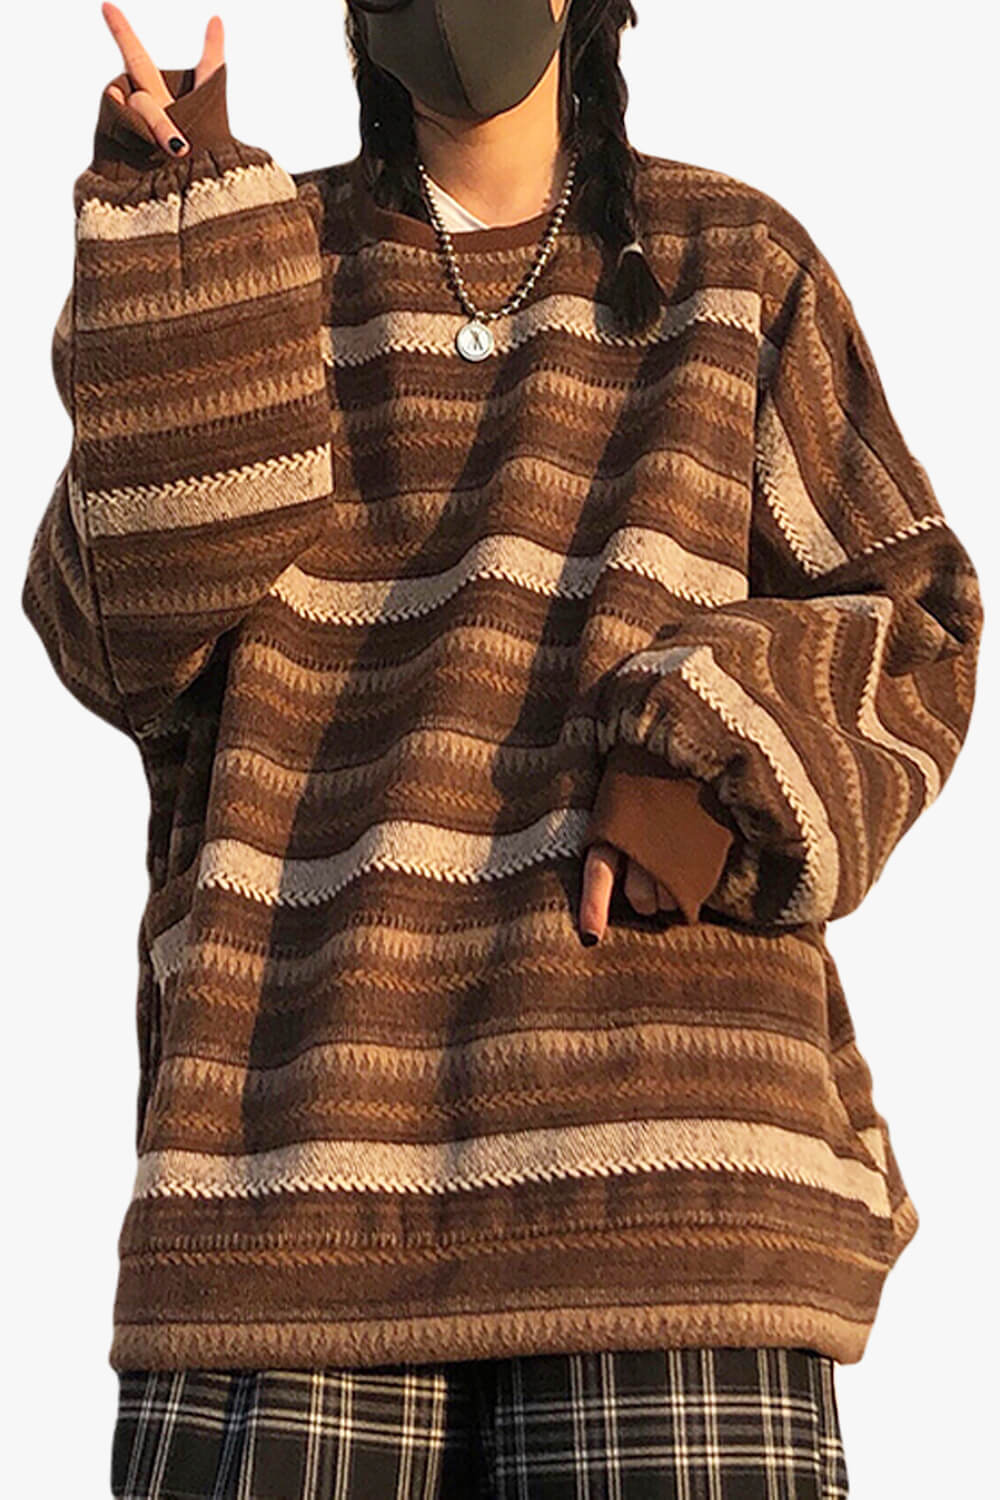 80s Aesthetic Retro Sweater